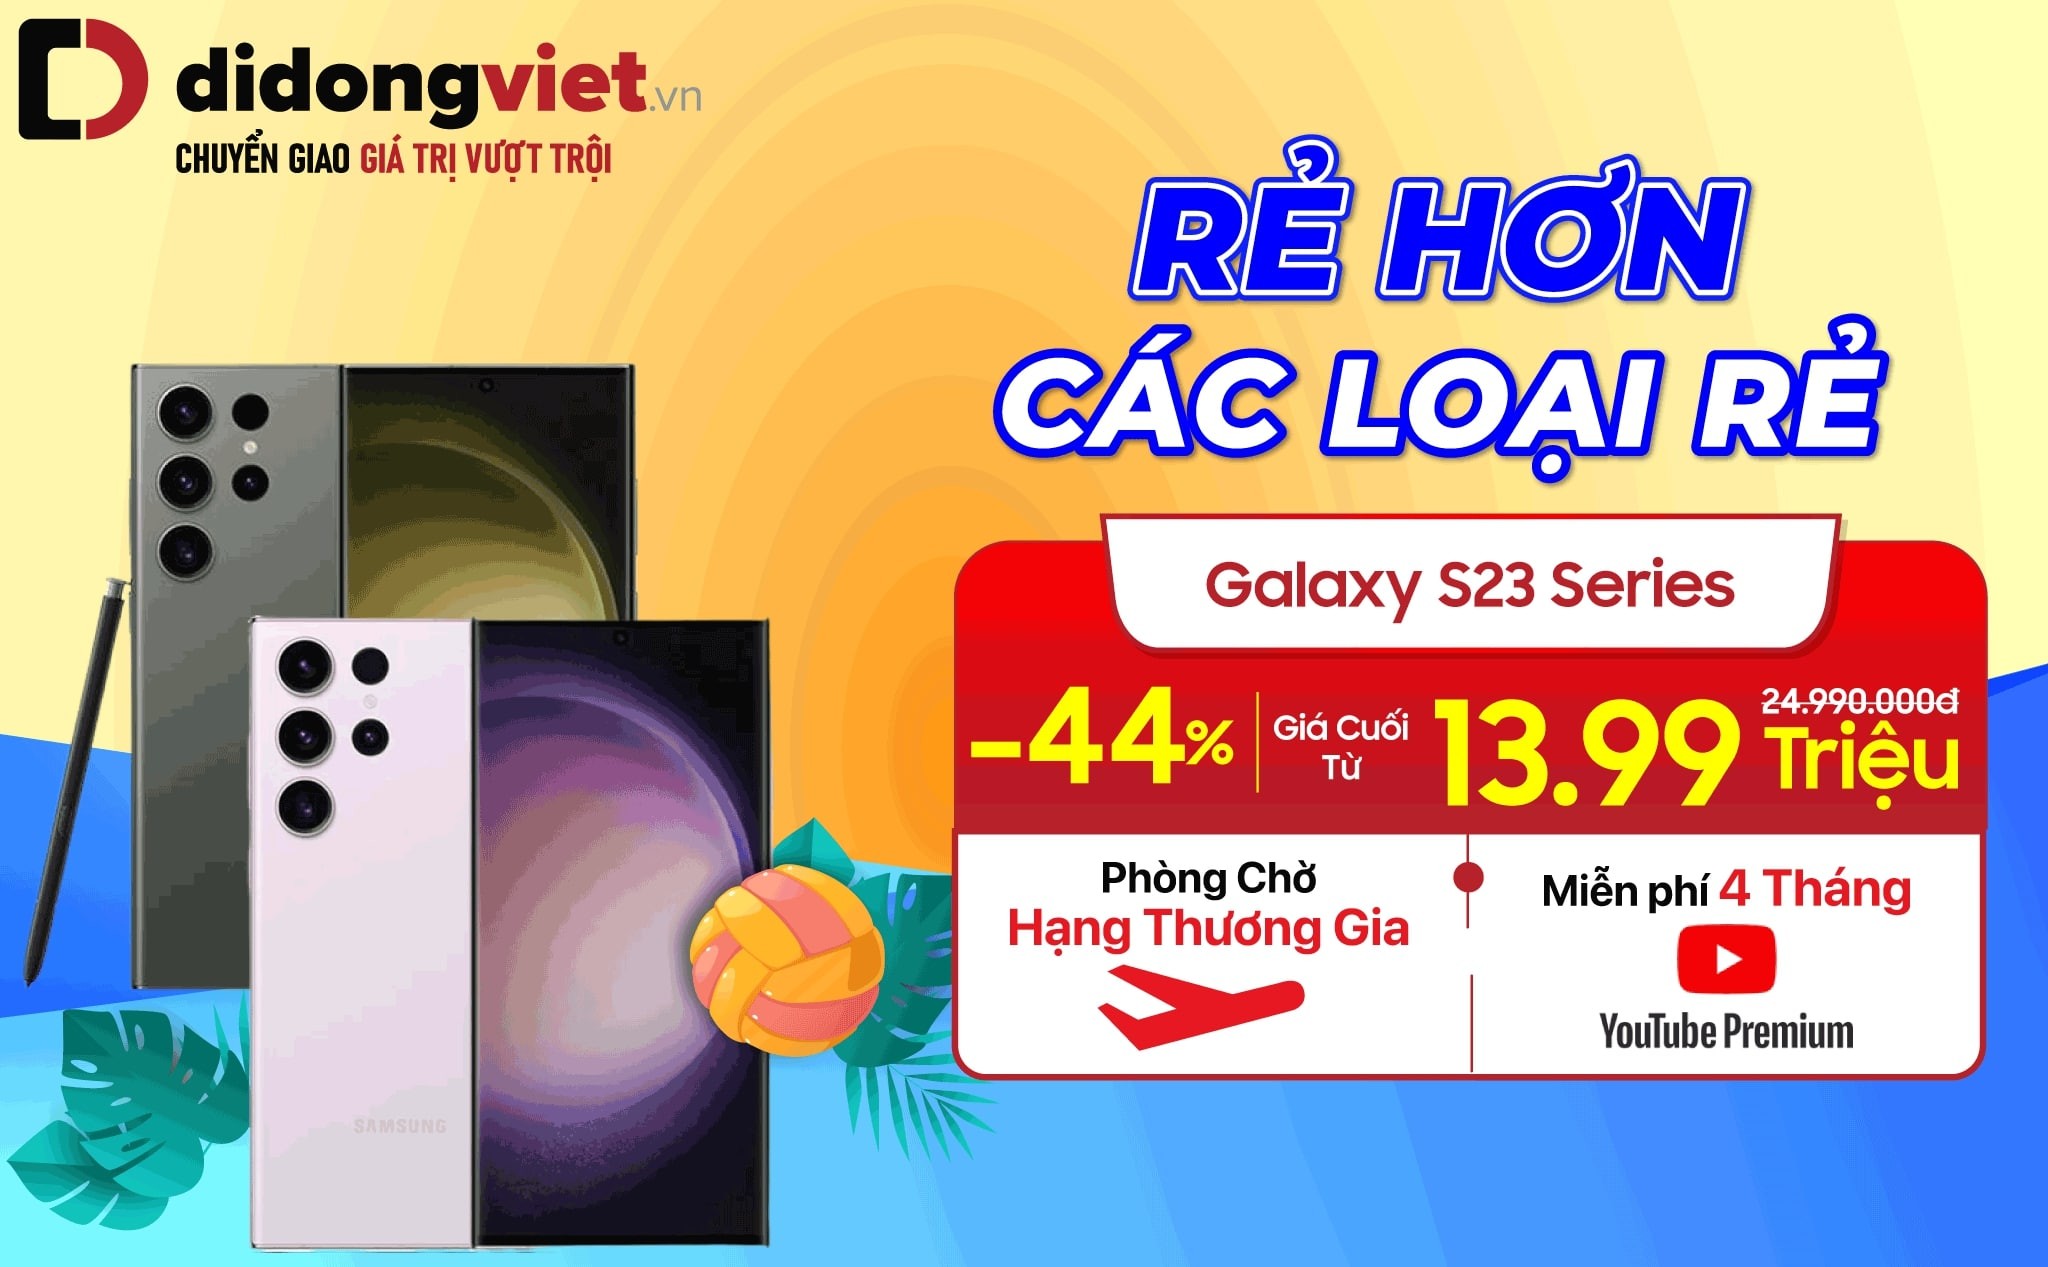 galaxy-s23-series-re-hon-cac-loai-re-tai-di-dong-viet-1684294913.jpg